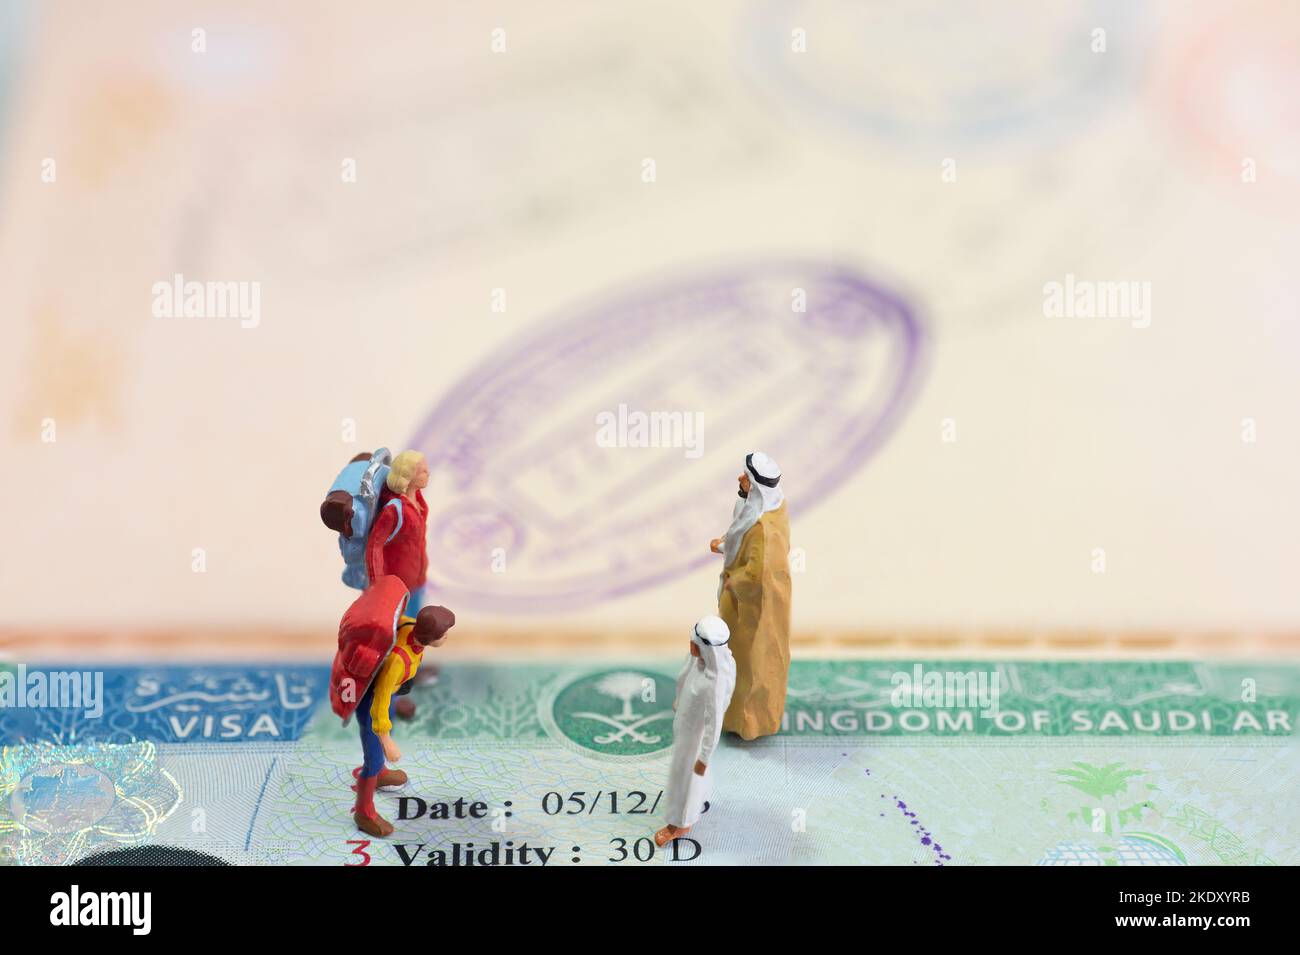 Concept de jouet miniature de deux Arabes accueillant des invités étrangers avec visa d'Arabie Saoudite comme arrière-plan. Banque D'Images